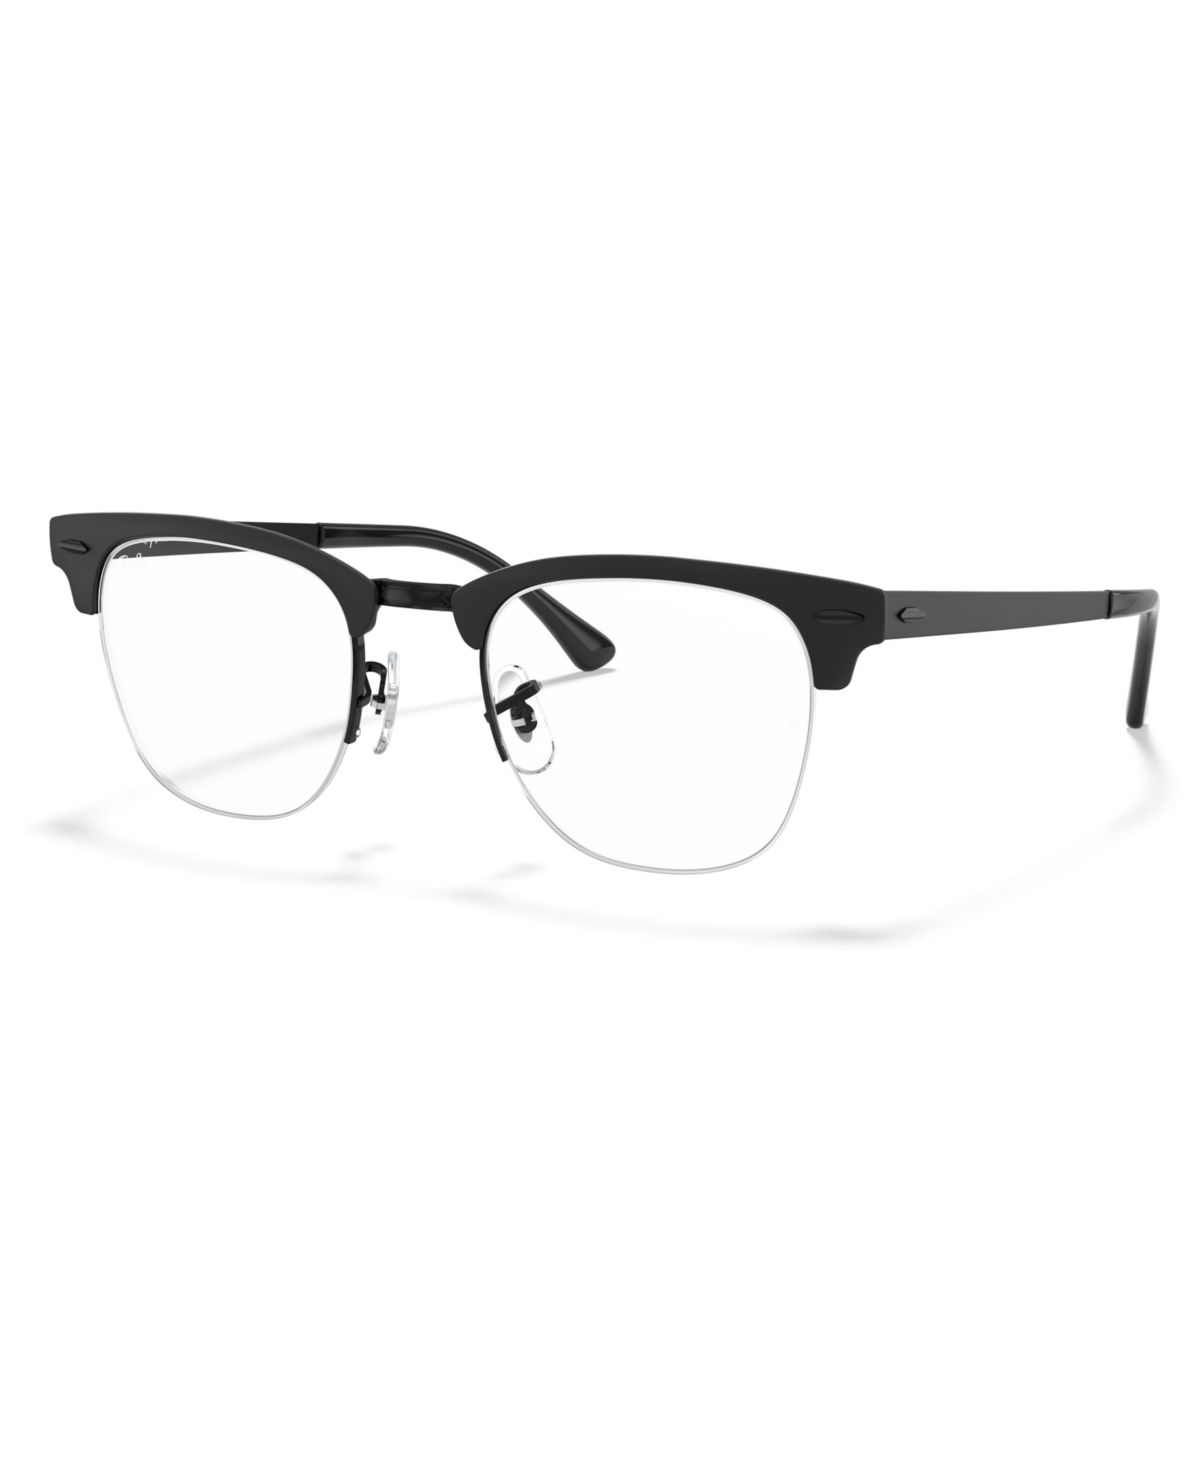 RX3716VM Clubmaster Metal Optics Unisex Square Eyeglasses - Black